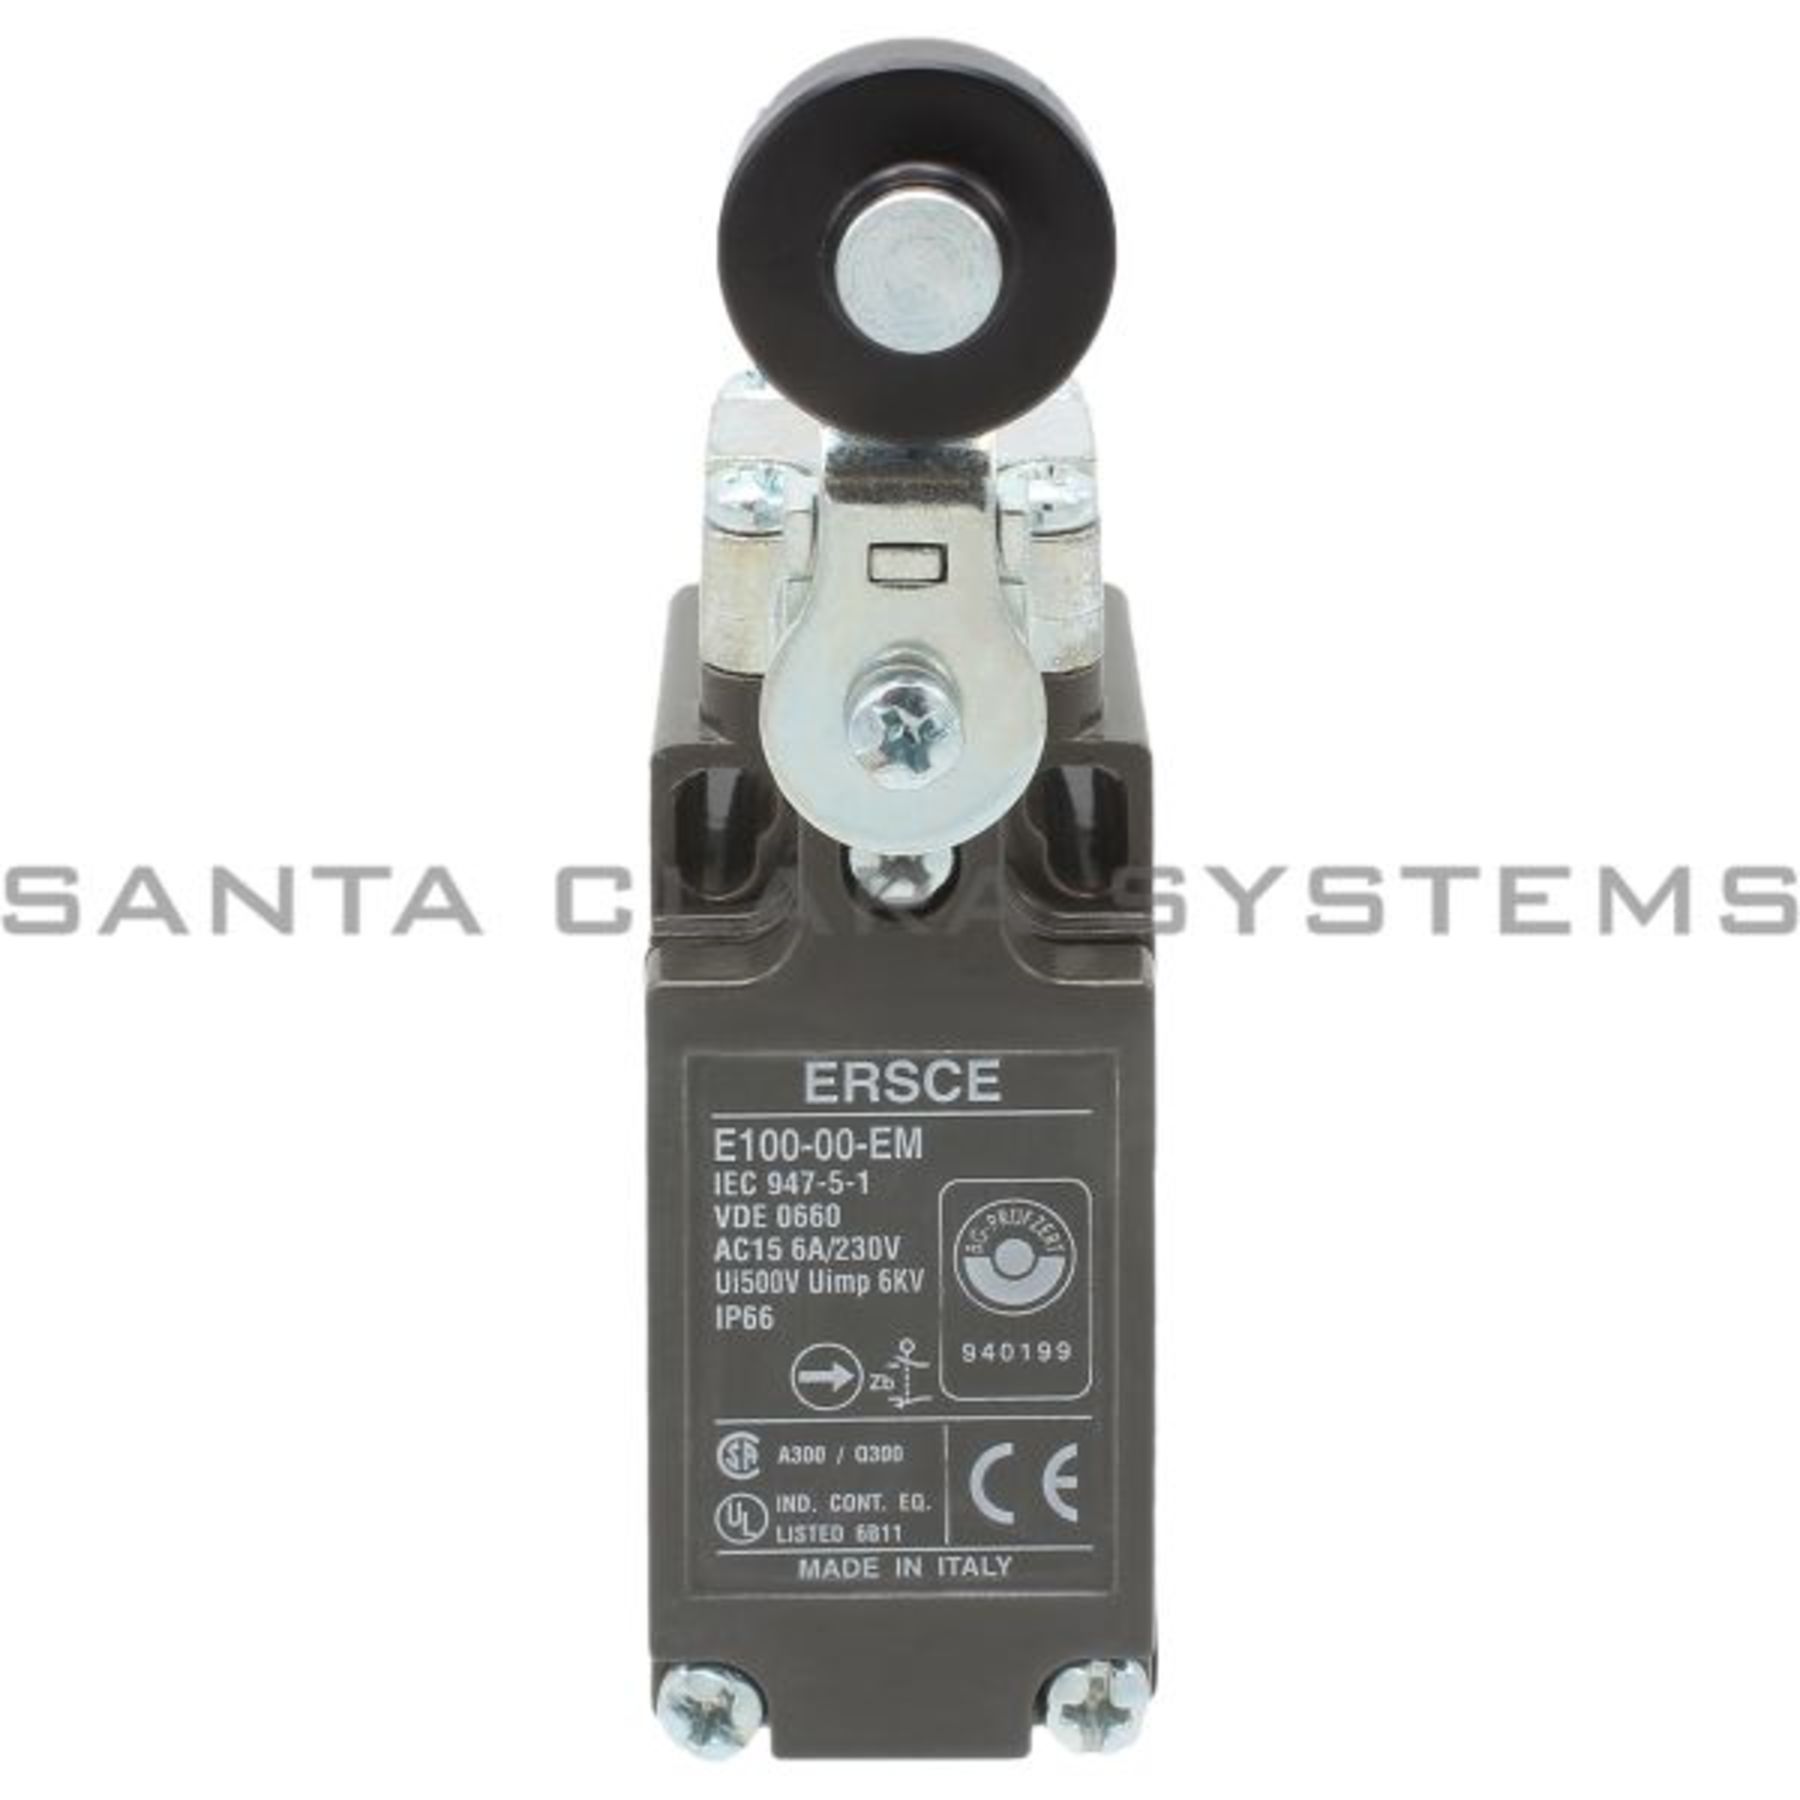 1PC FOR ERSCE Limit Switch E100-00-EM E10000EM NEW